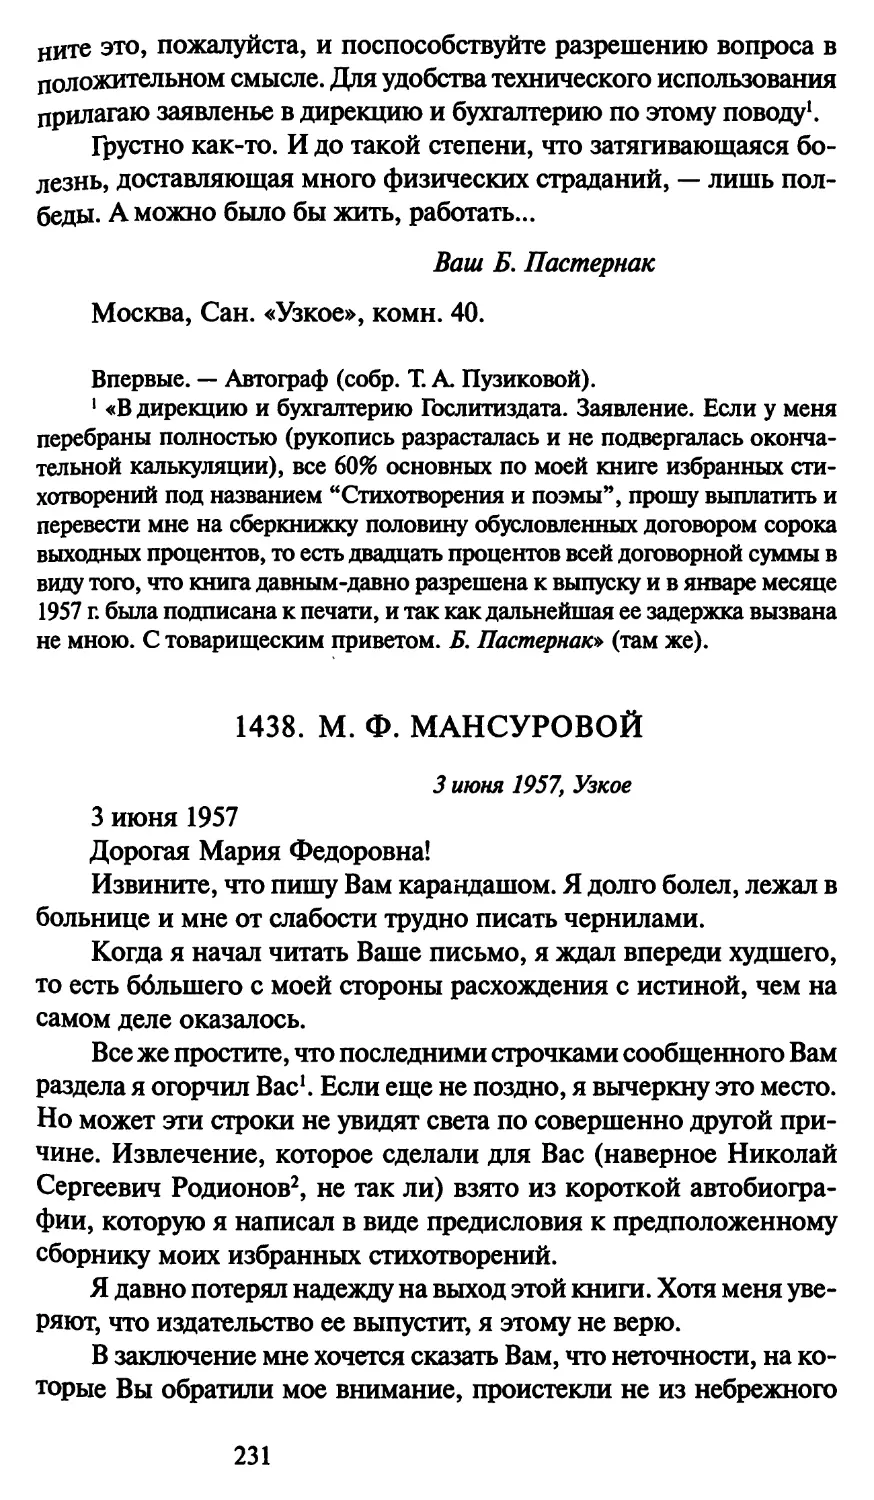 1438. М. Ф. Мансуровой 3 июня 1957